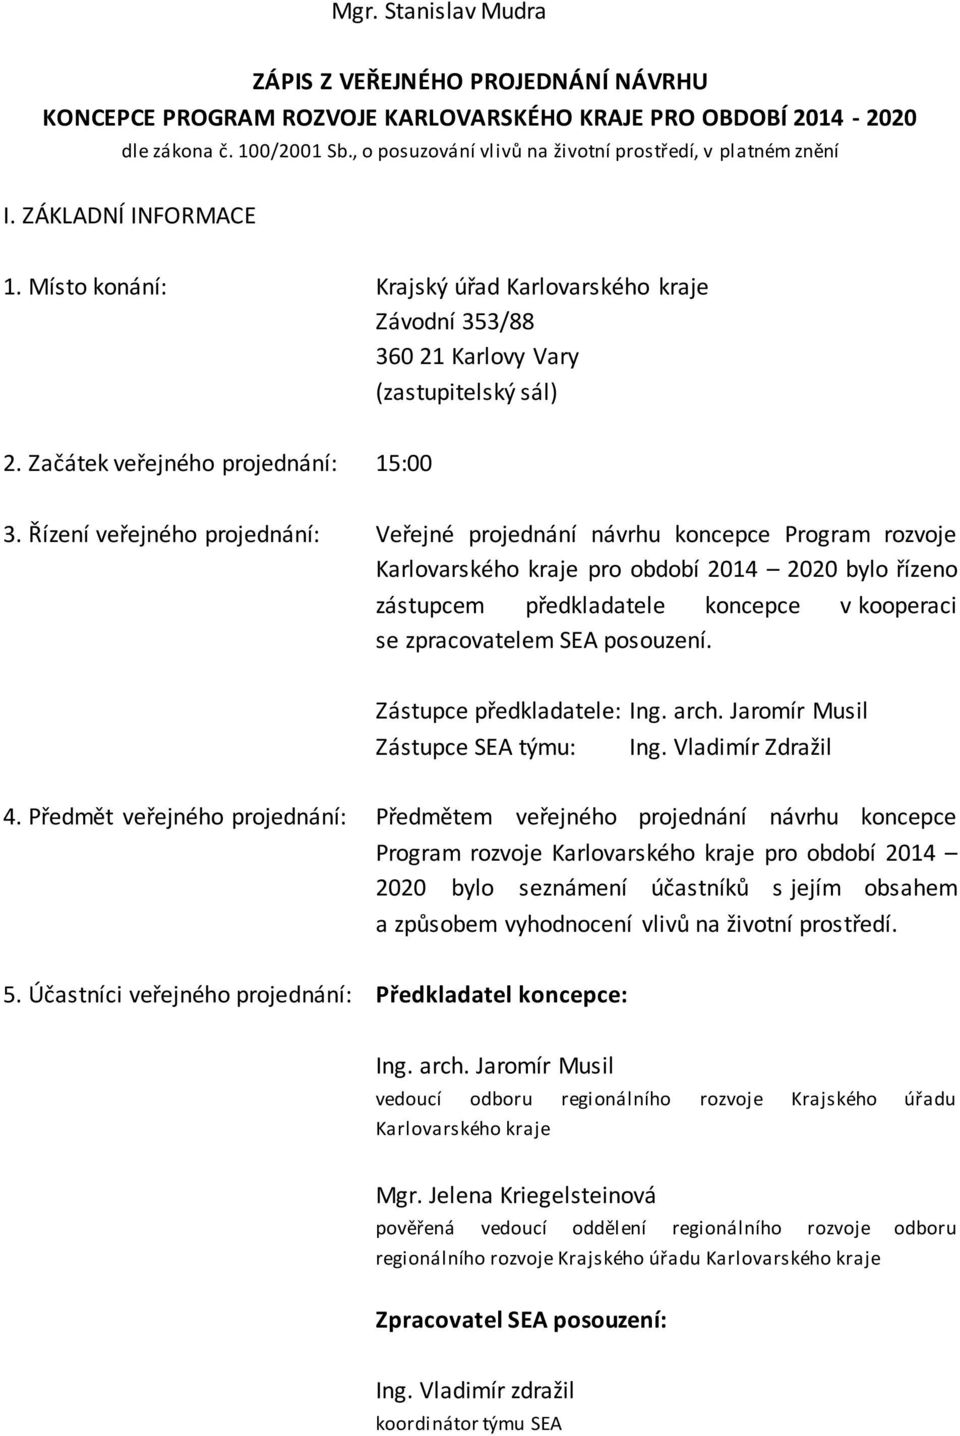 Řízení veřejného projednání: Veřejné projednání návrhu koncepce Program rozvoje Karlovarského kraje pro období 2014 2020 bylo řízeno zástupcem předkladatele koncepce v kooperaci se zpracovatelem SEA